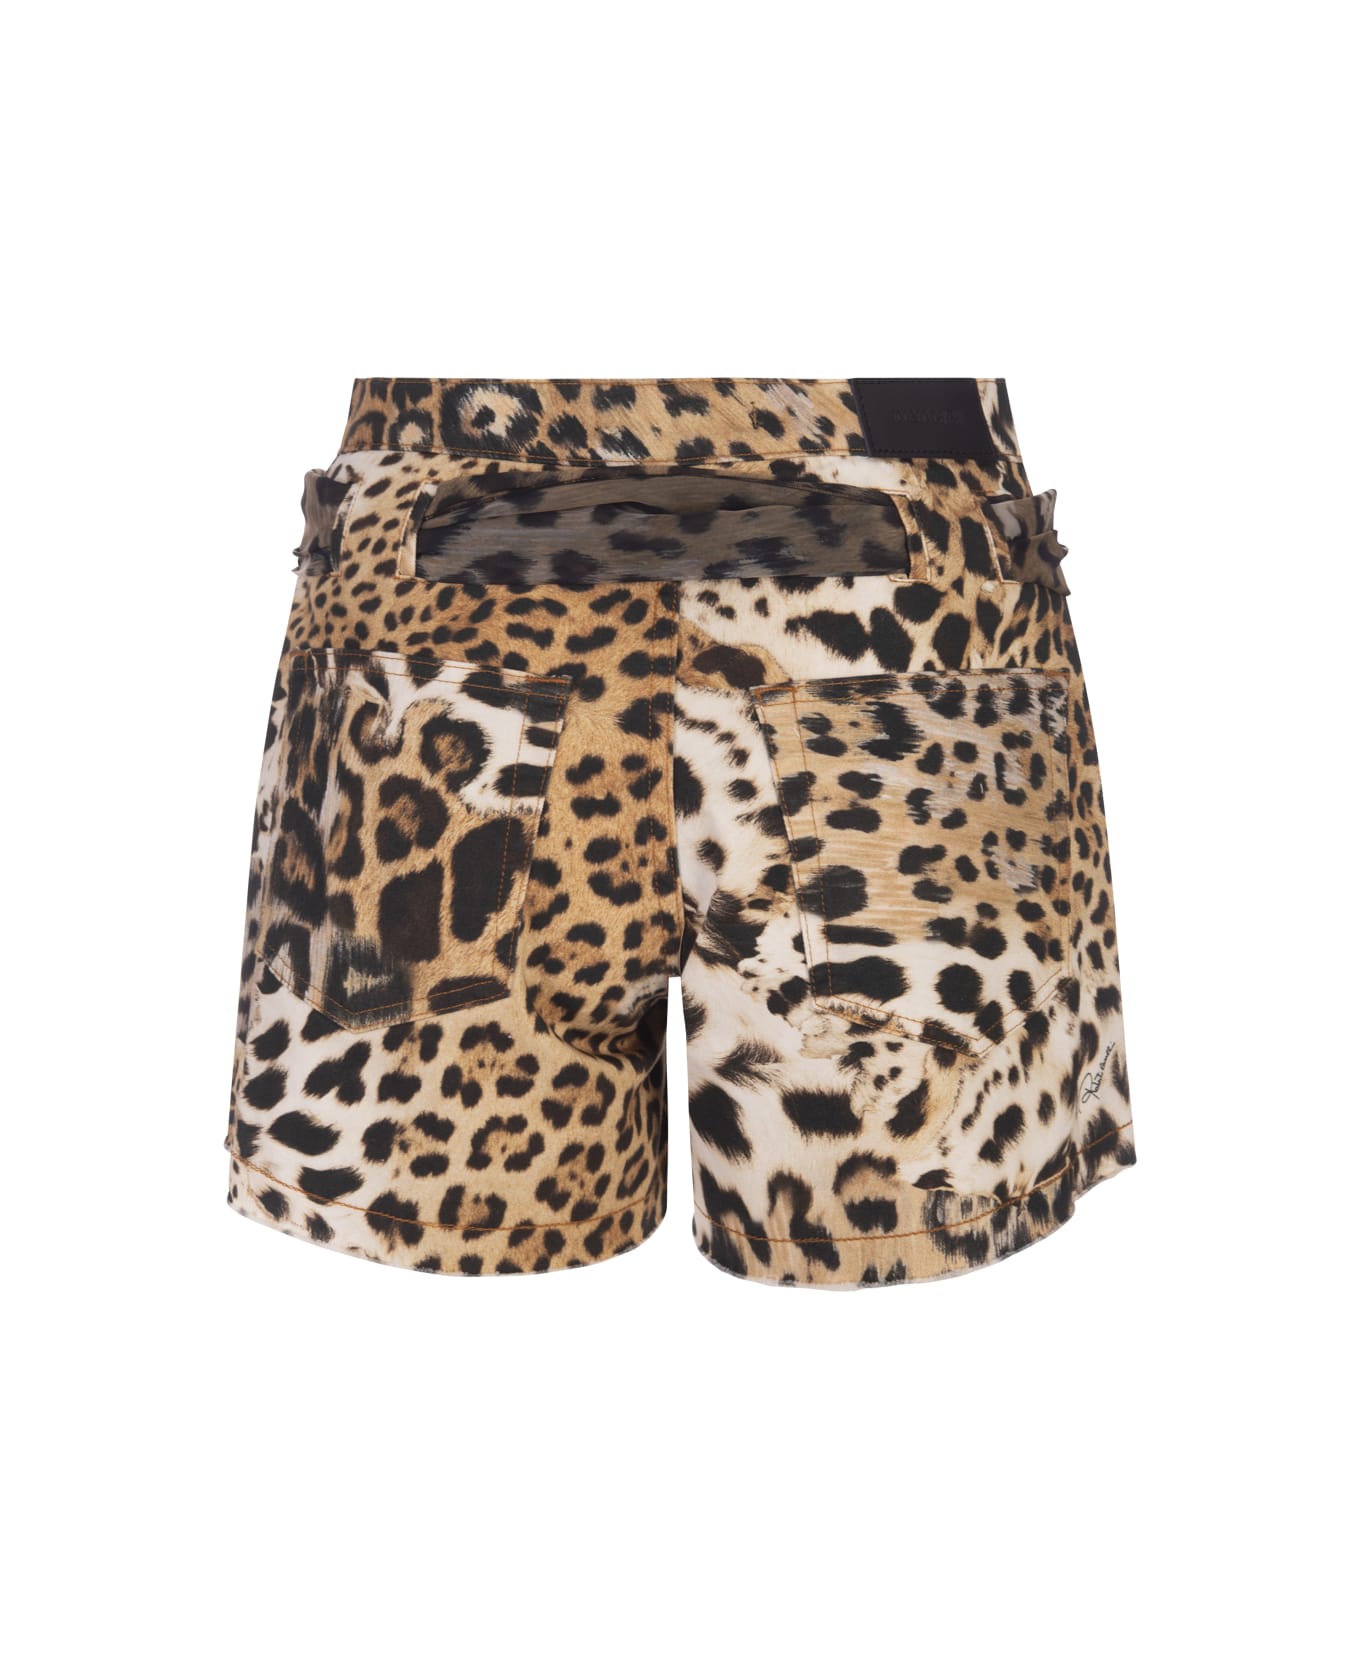 Roberto Cavalli Jaguar Skin Print Shorts - Brown ショートパンツ